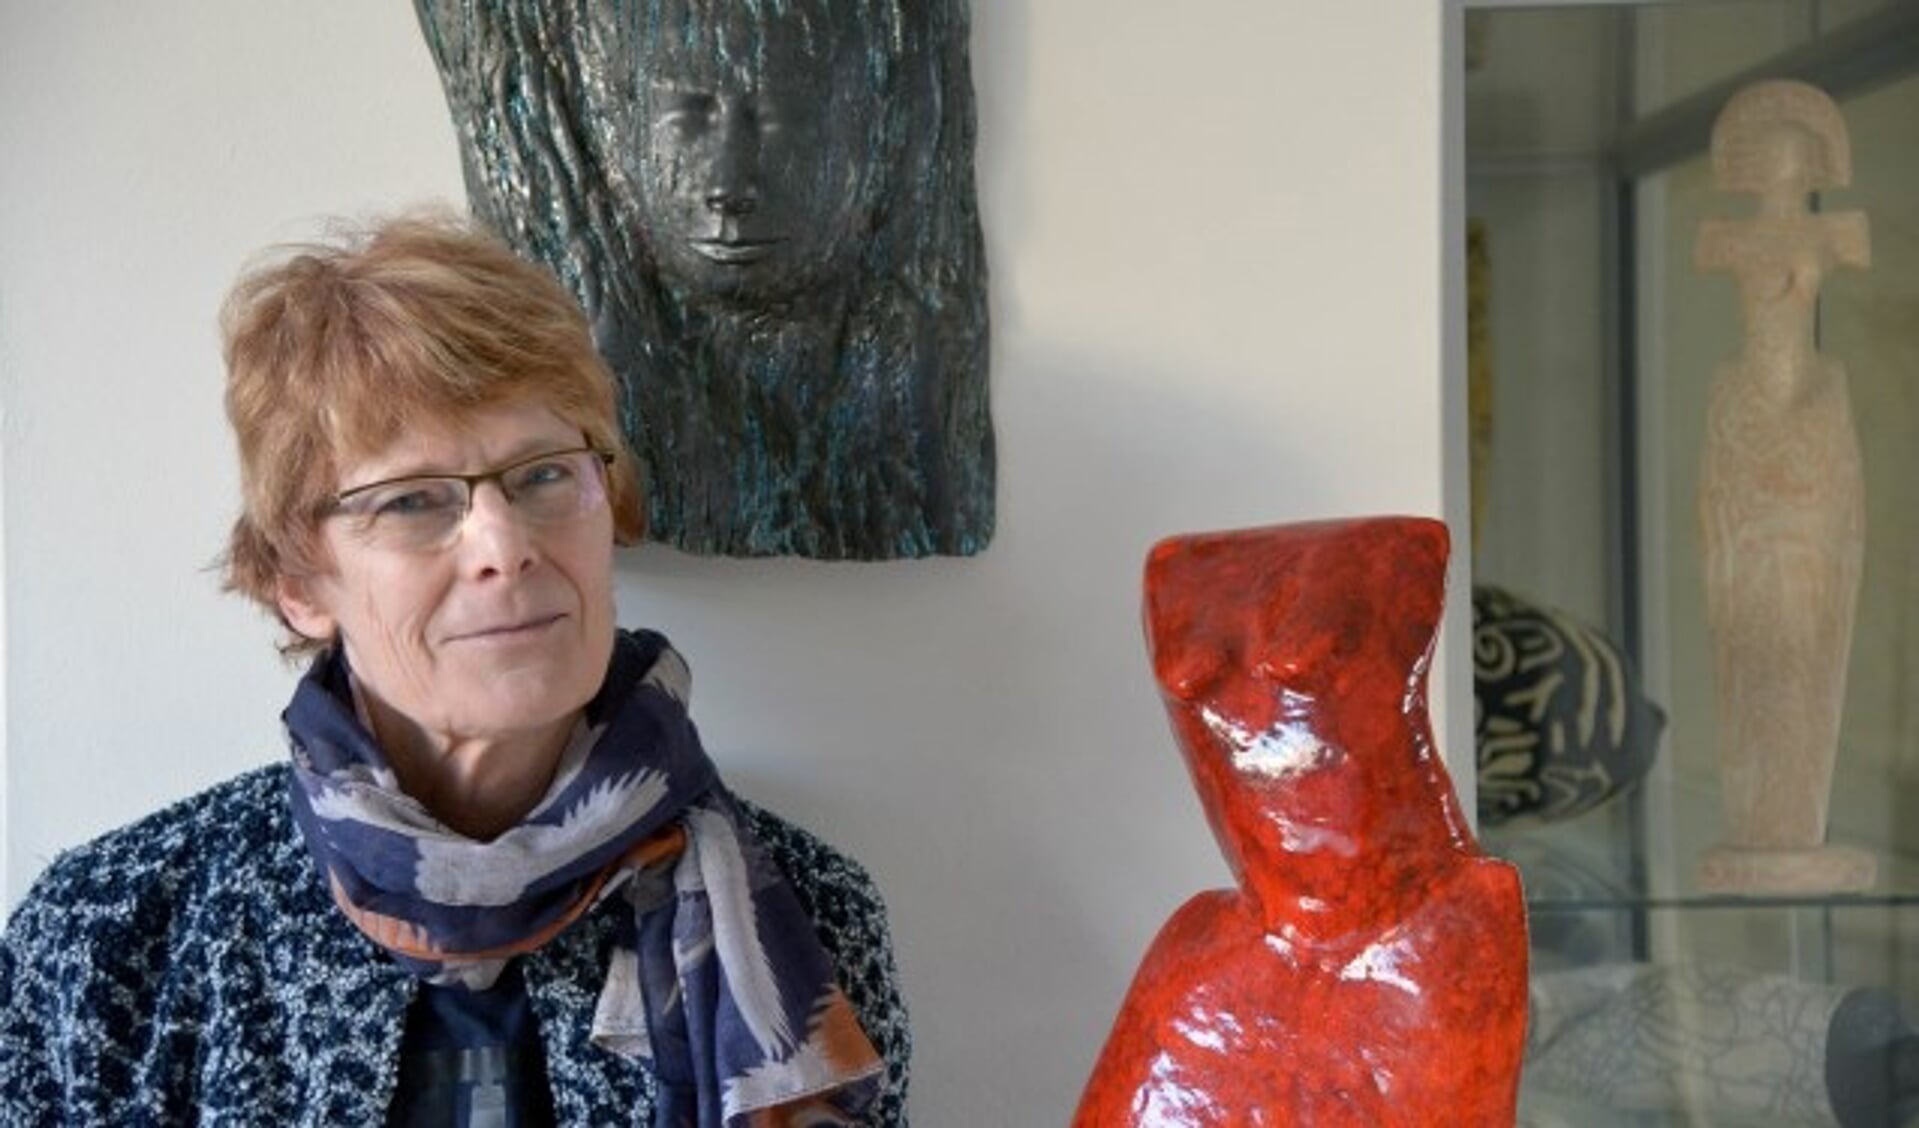 Heleen van Nieuwland is één van de keramisten die meedoet aan de Landelijke Keramiekdagen. (Tekst + foto: Paul van den Dungen)